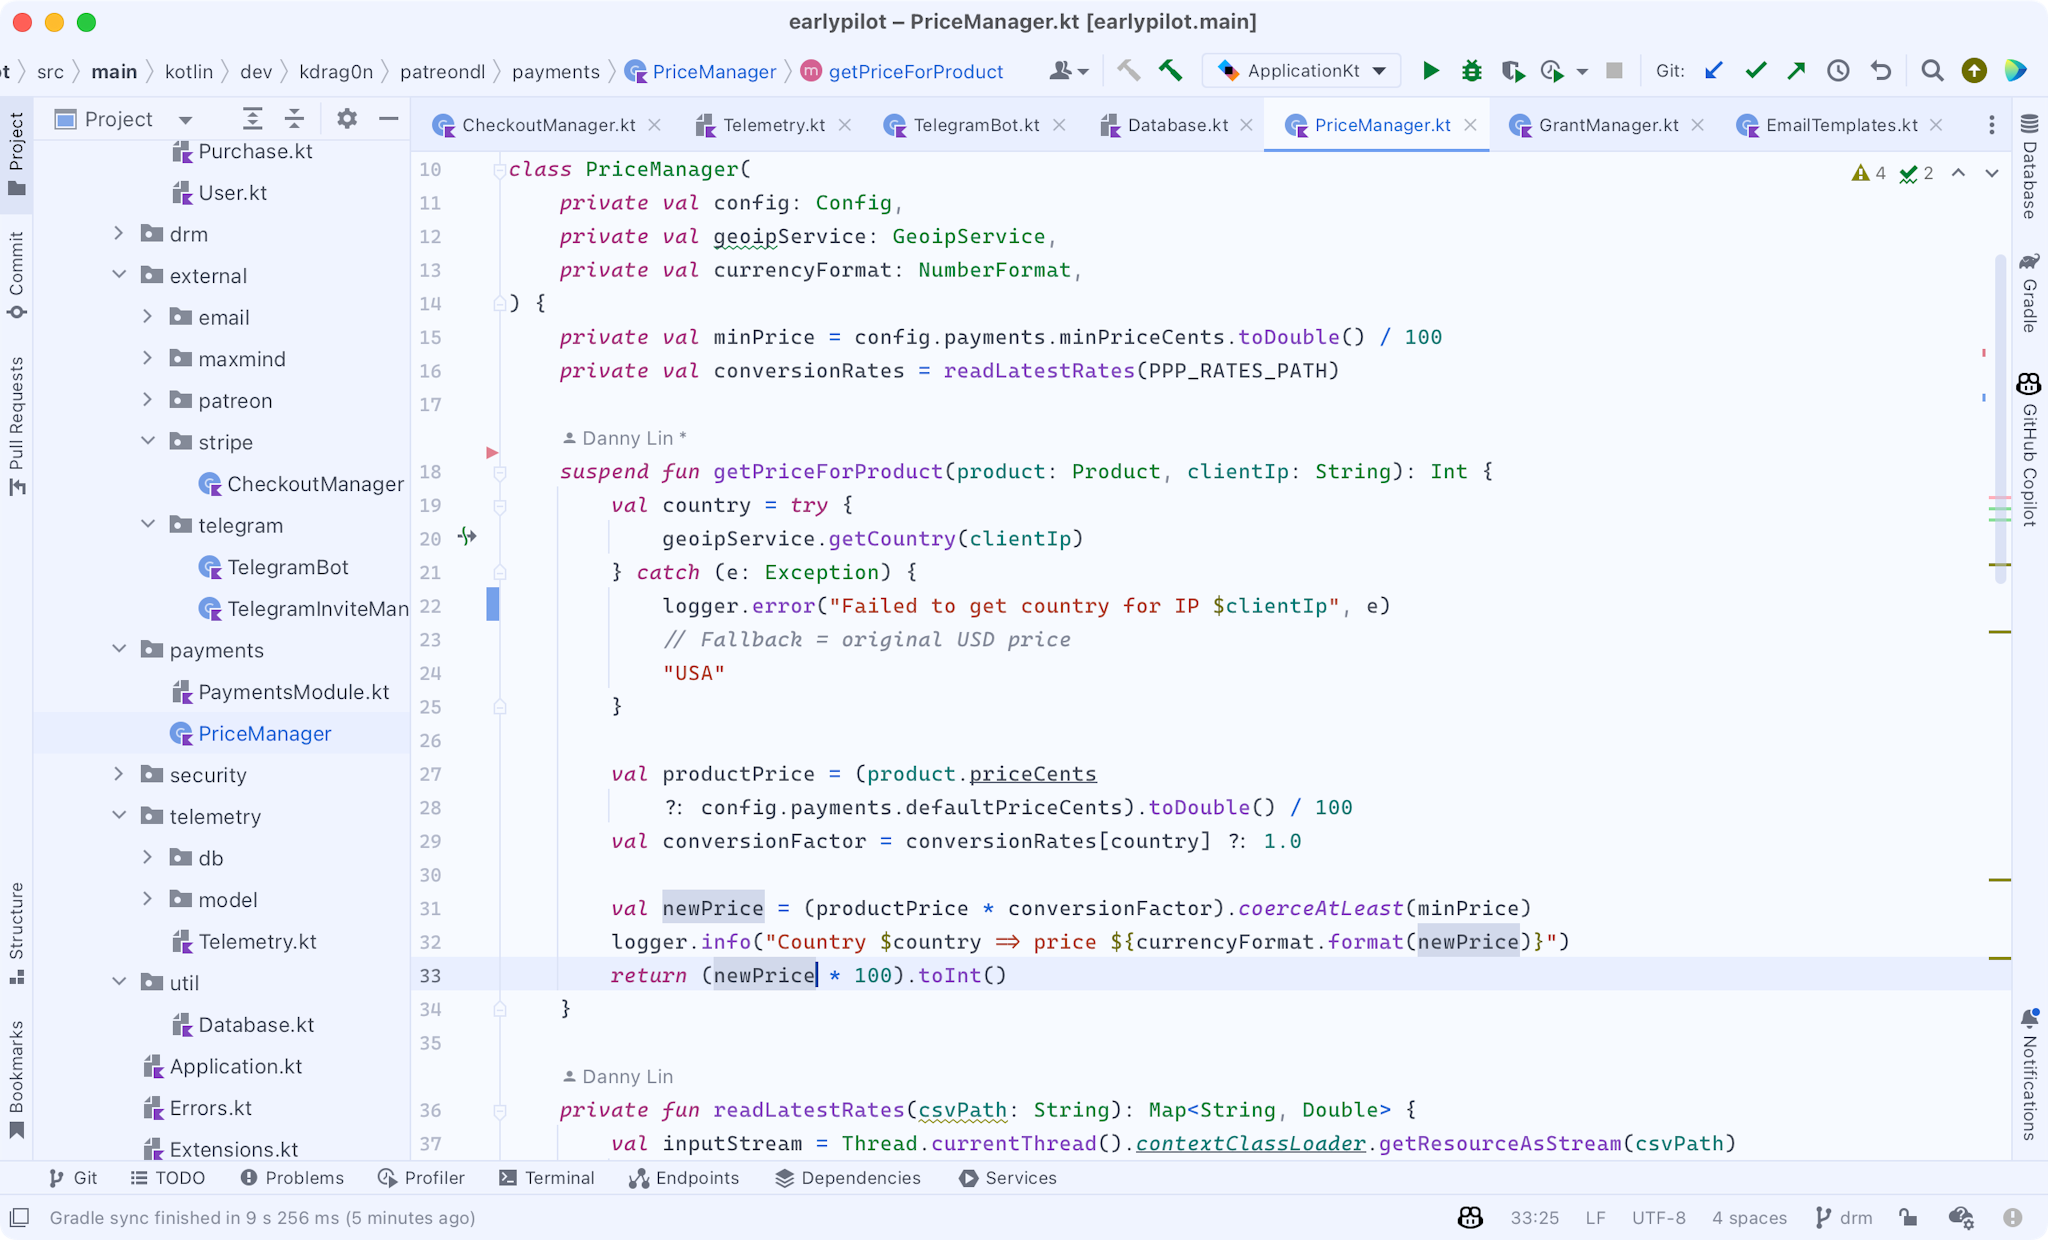 Screenshot of RubyMine with a Hueflake theme